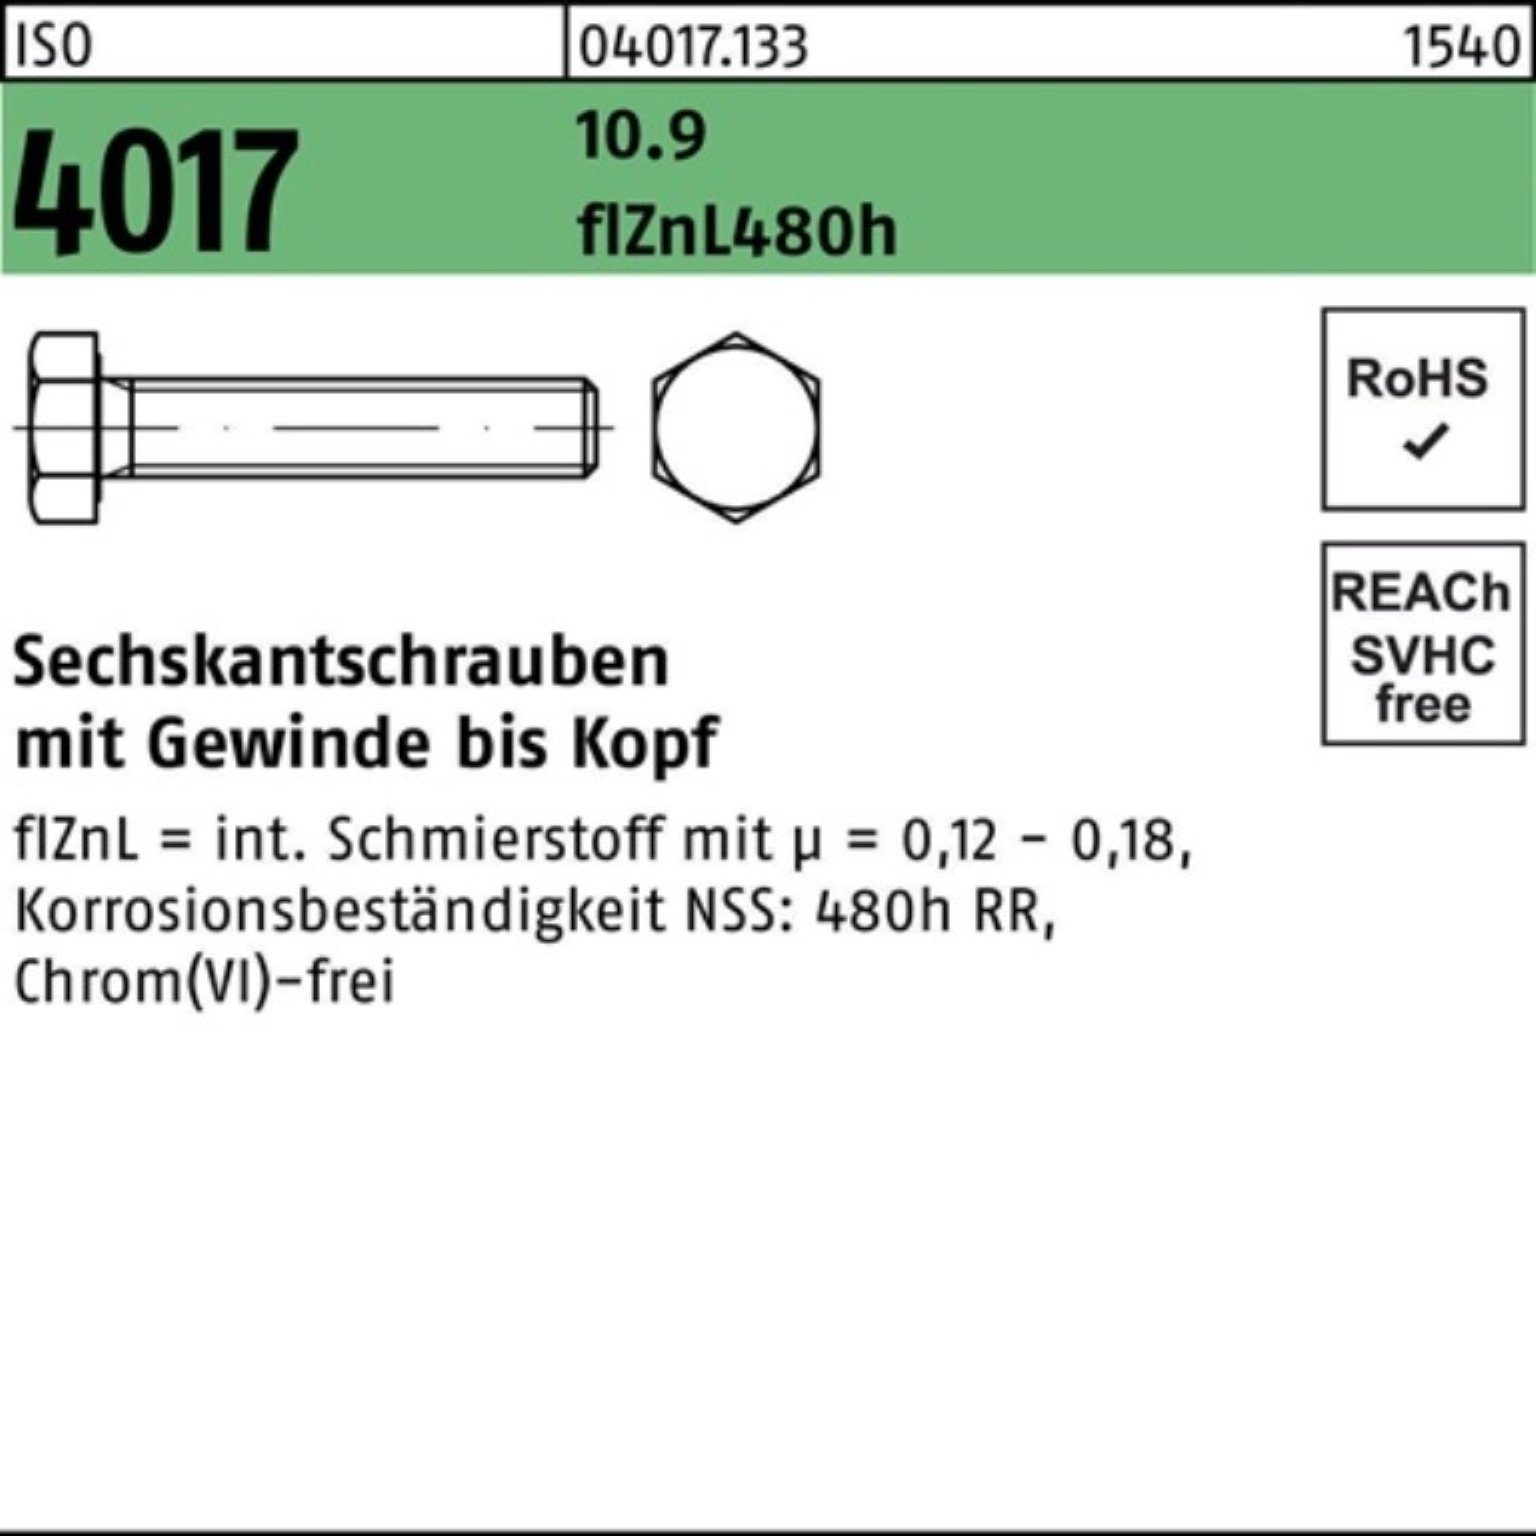 Bufab Sechskantschraube 100er Pack 80 VG M24x 2 zinklamellenb. Sechskantschraube 4017 10.9 ISO